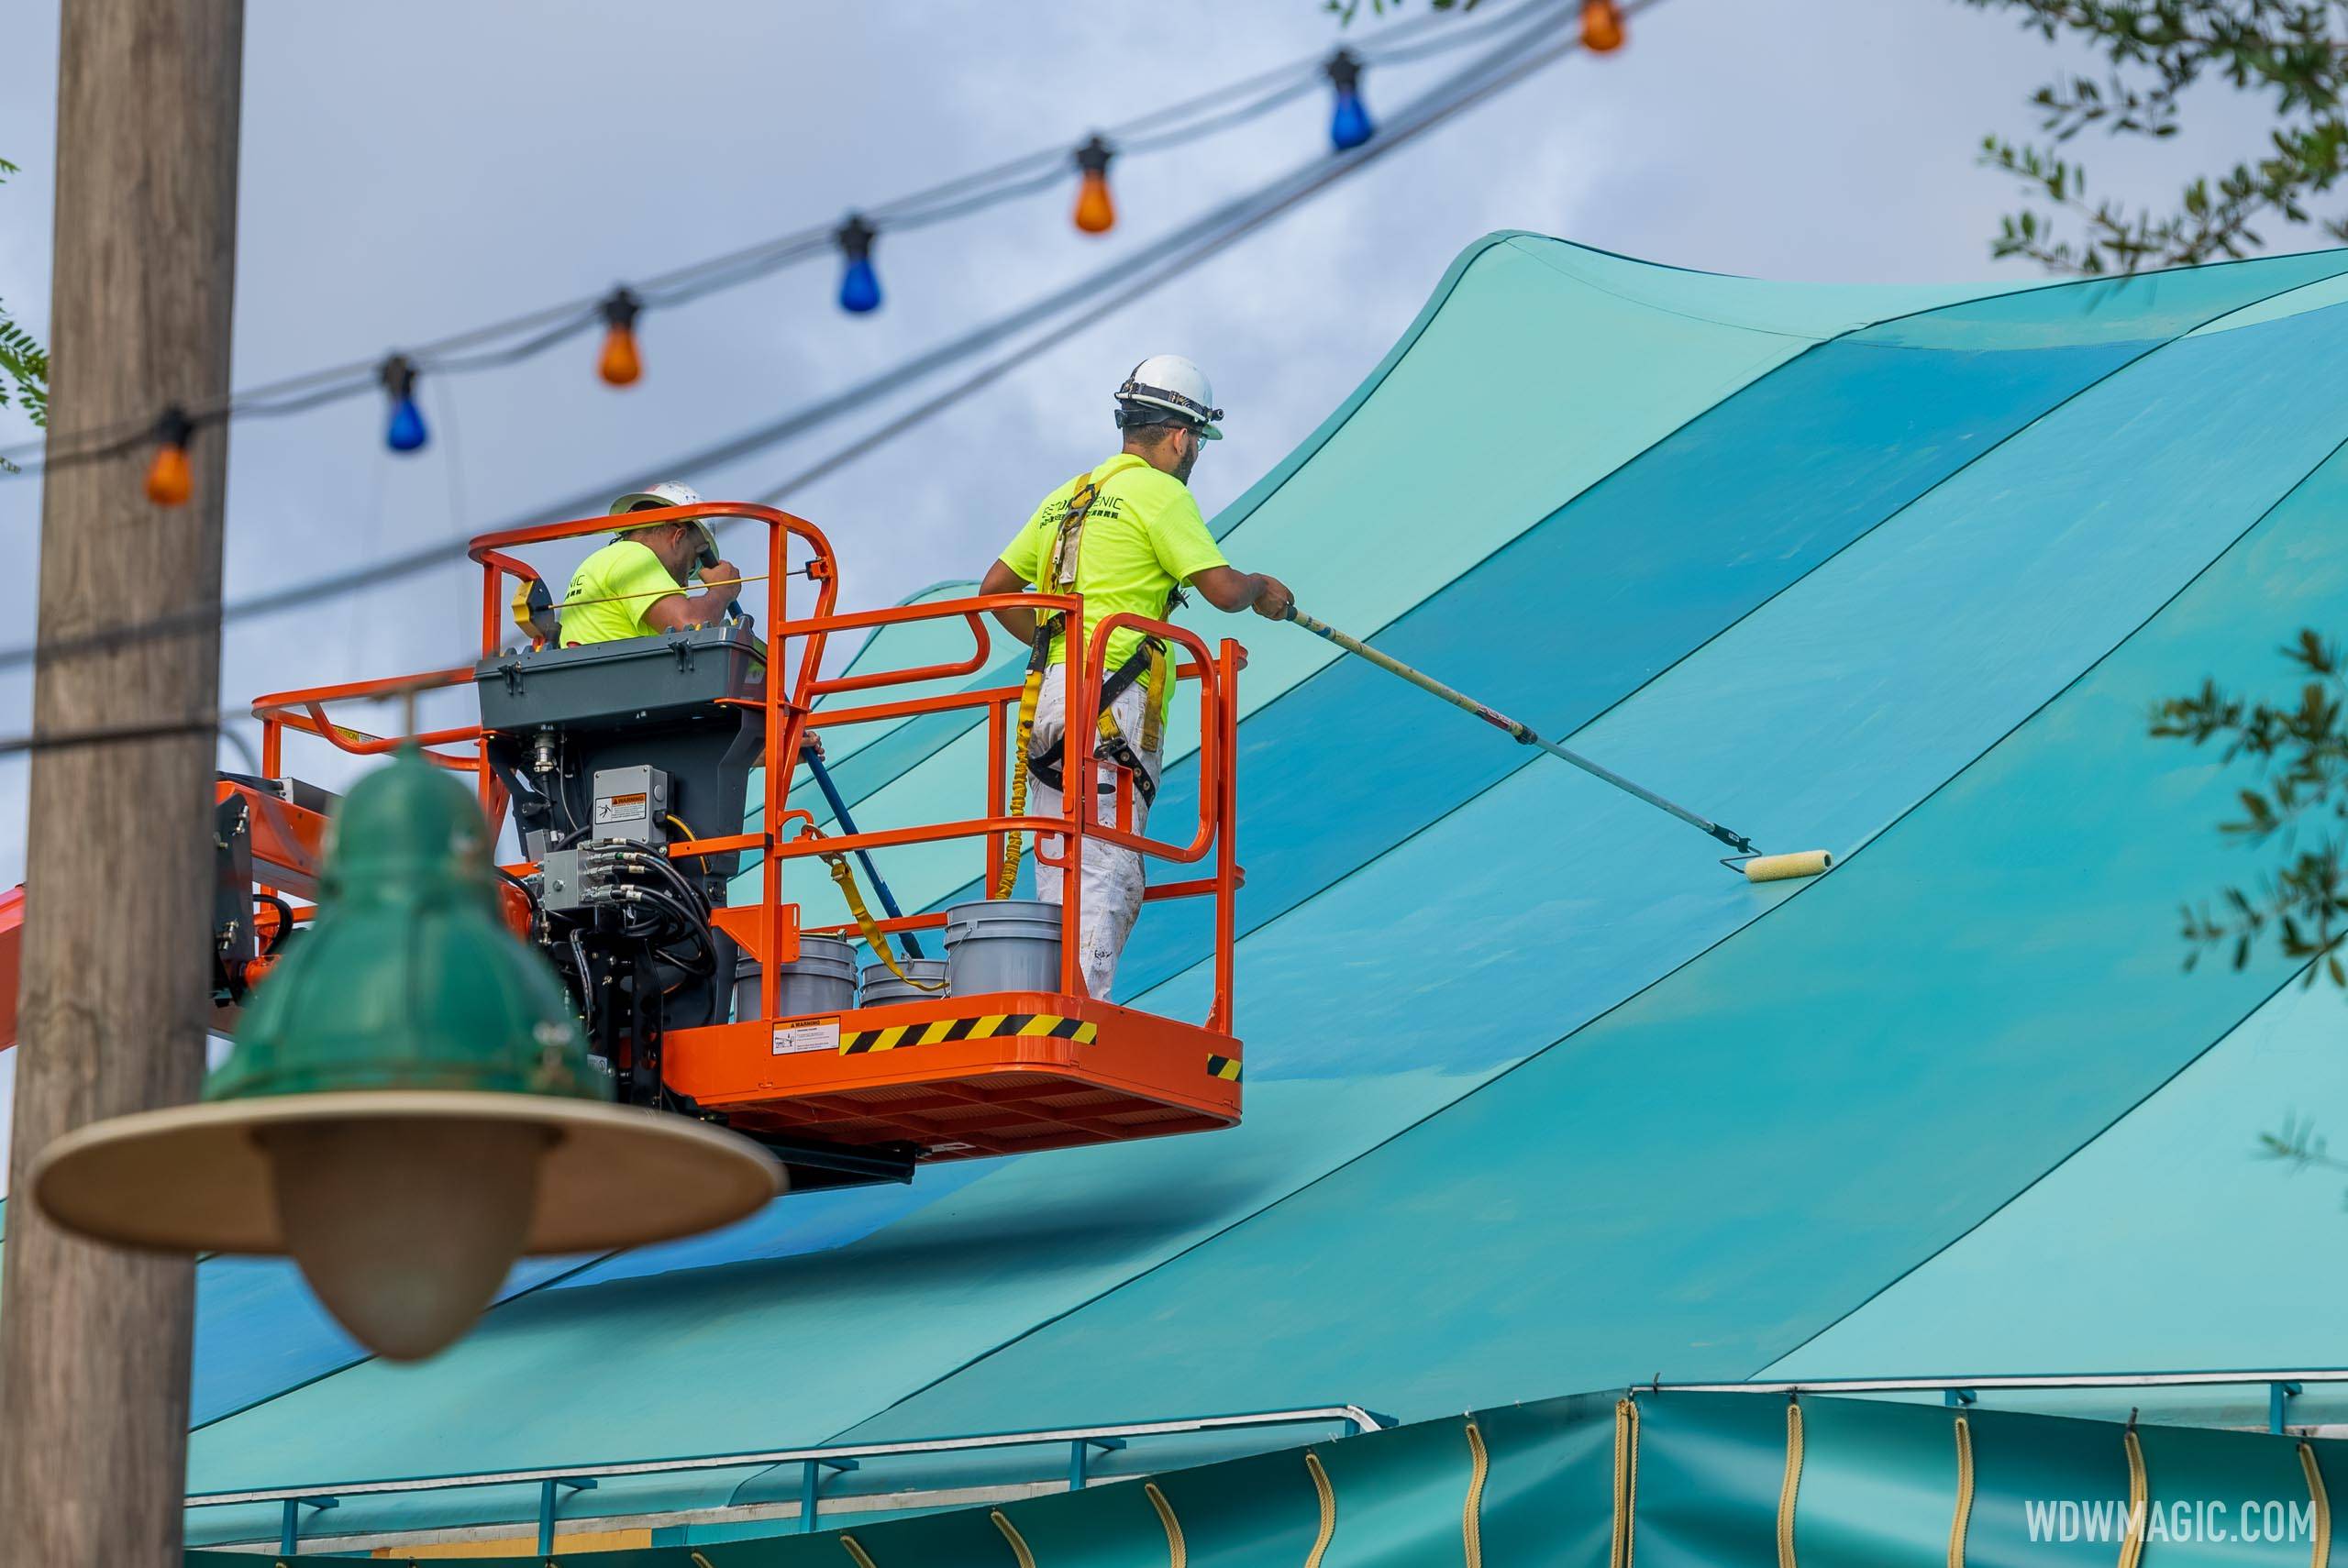 Storybook Circus big top tent refurbishment - August 2 2021